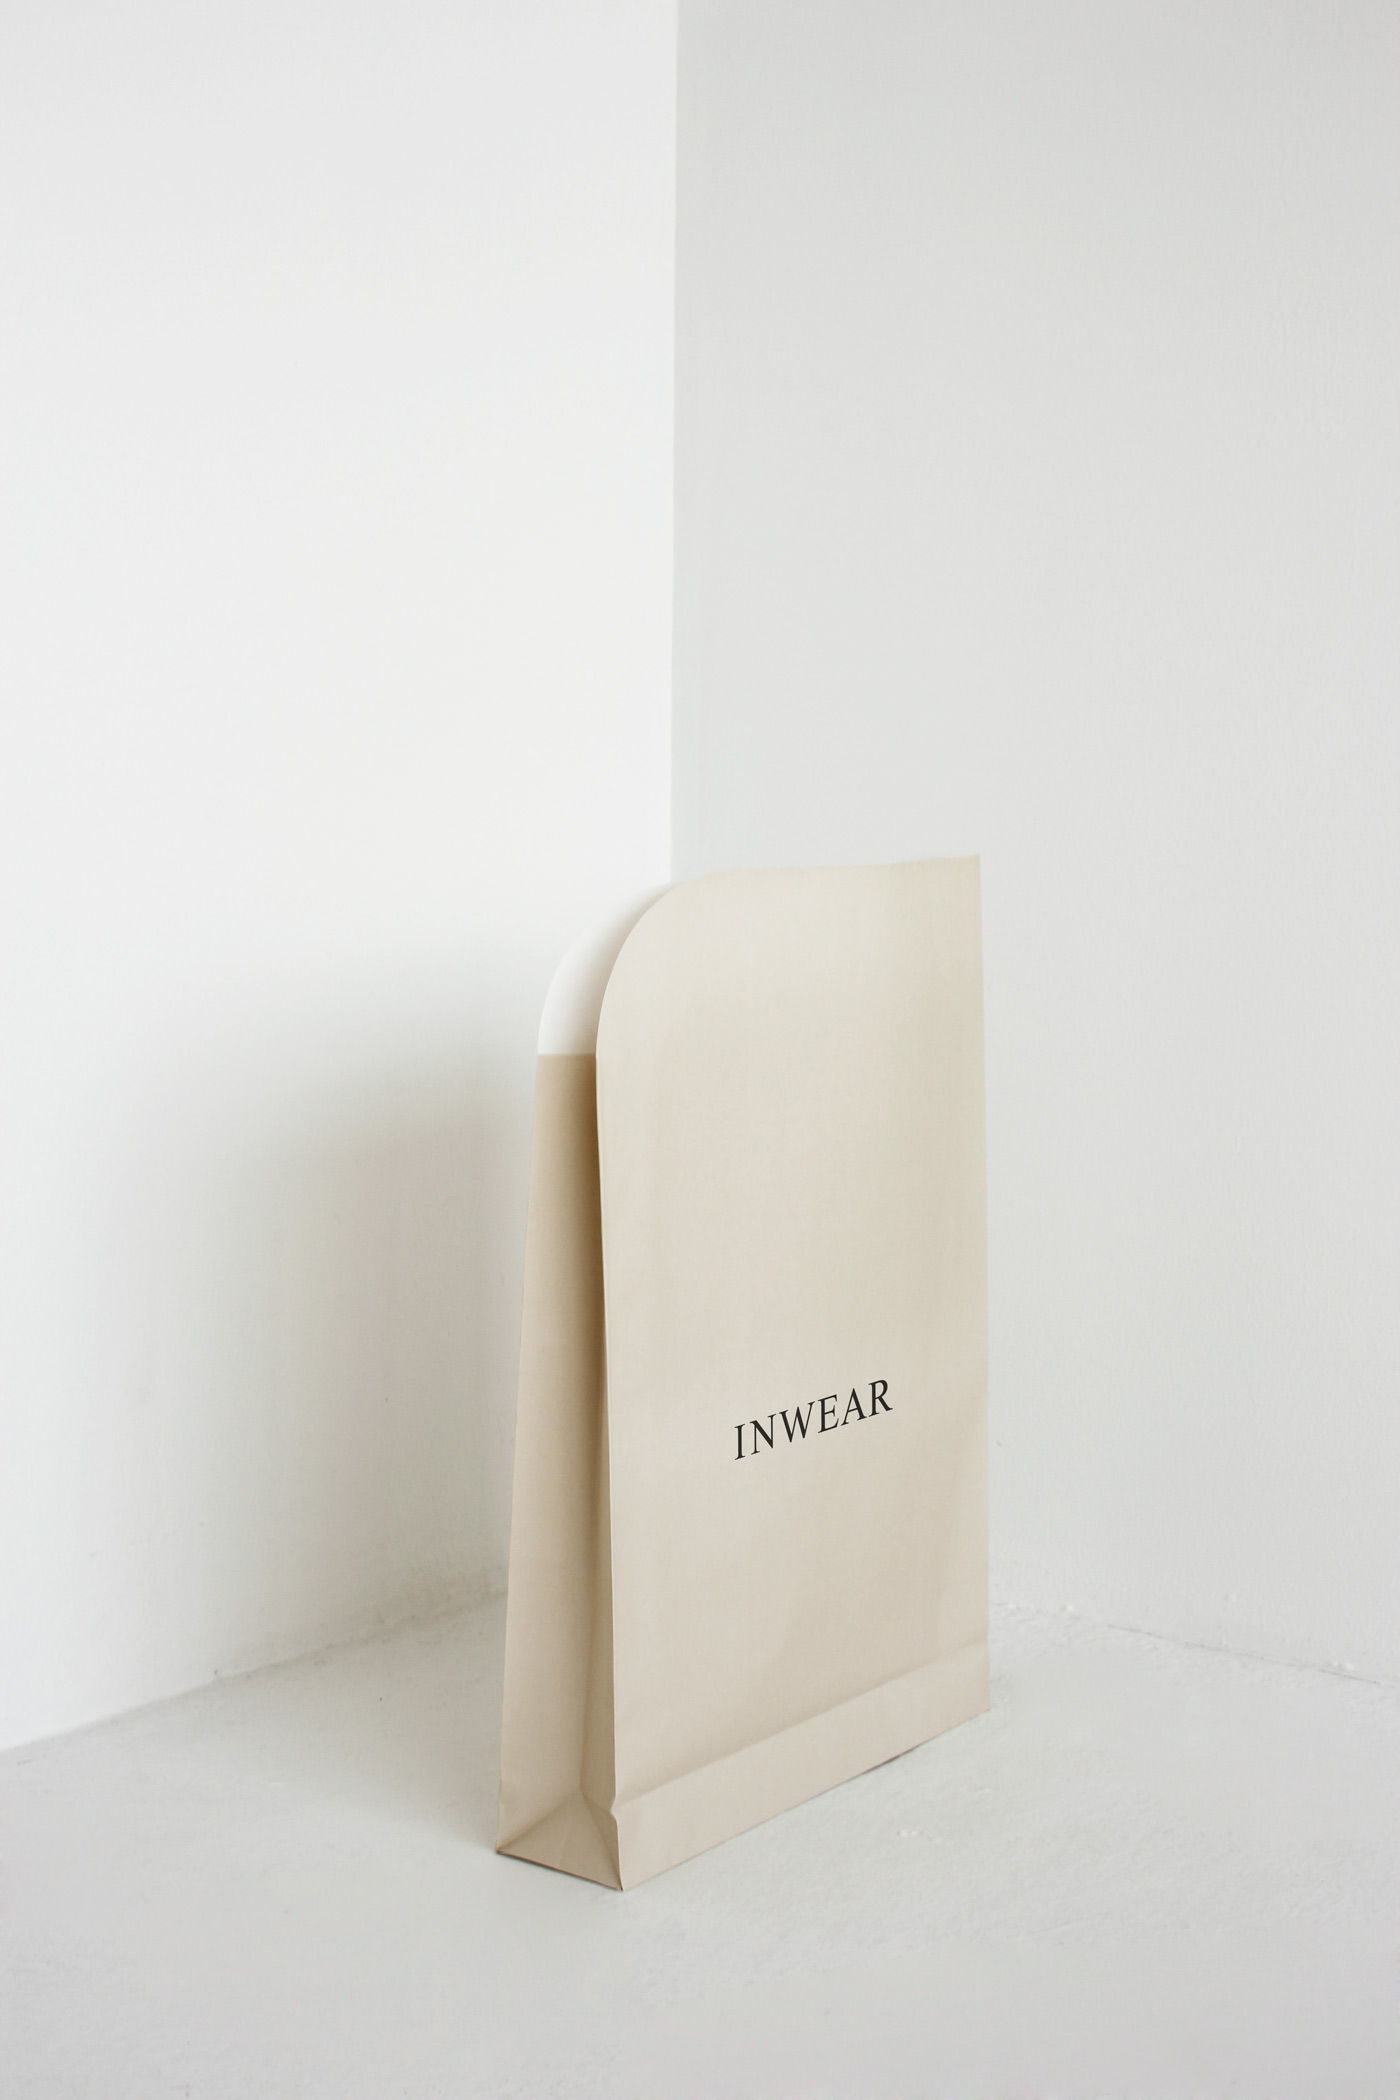 Inwear – Gift bag